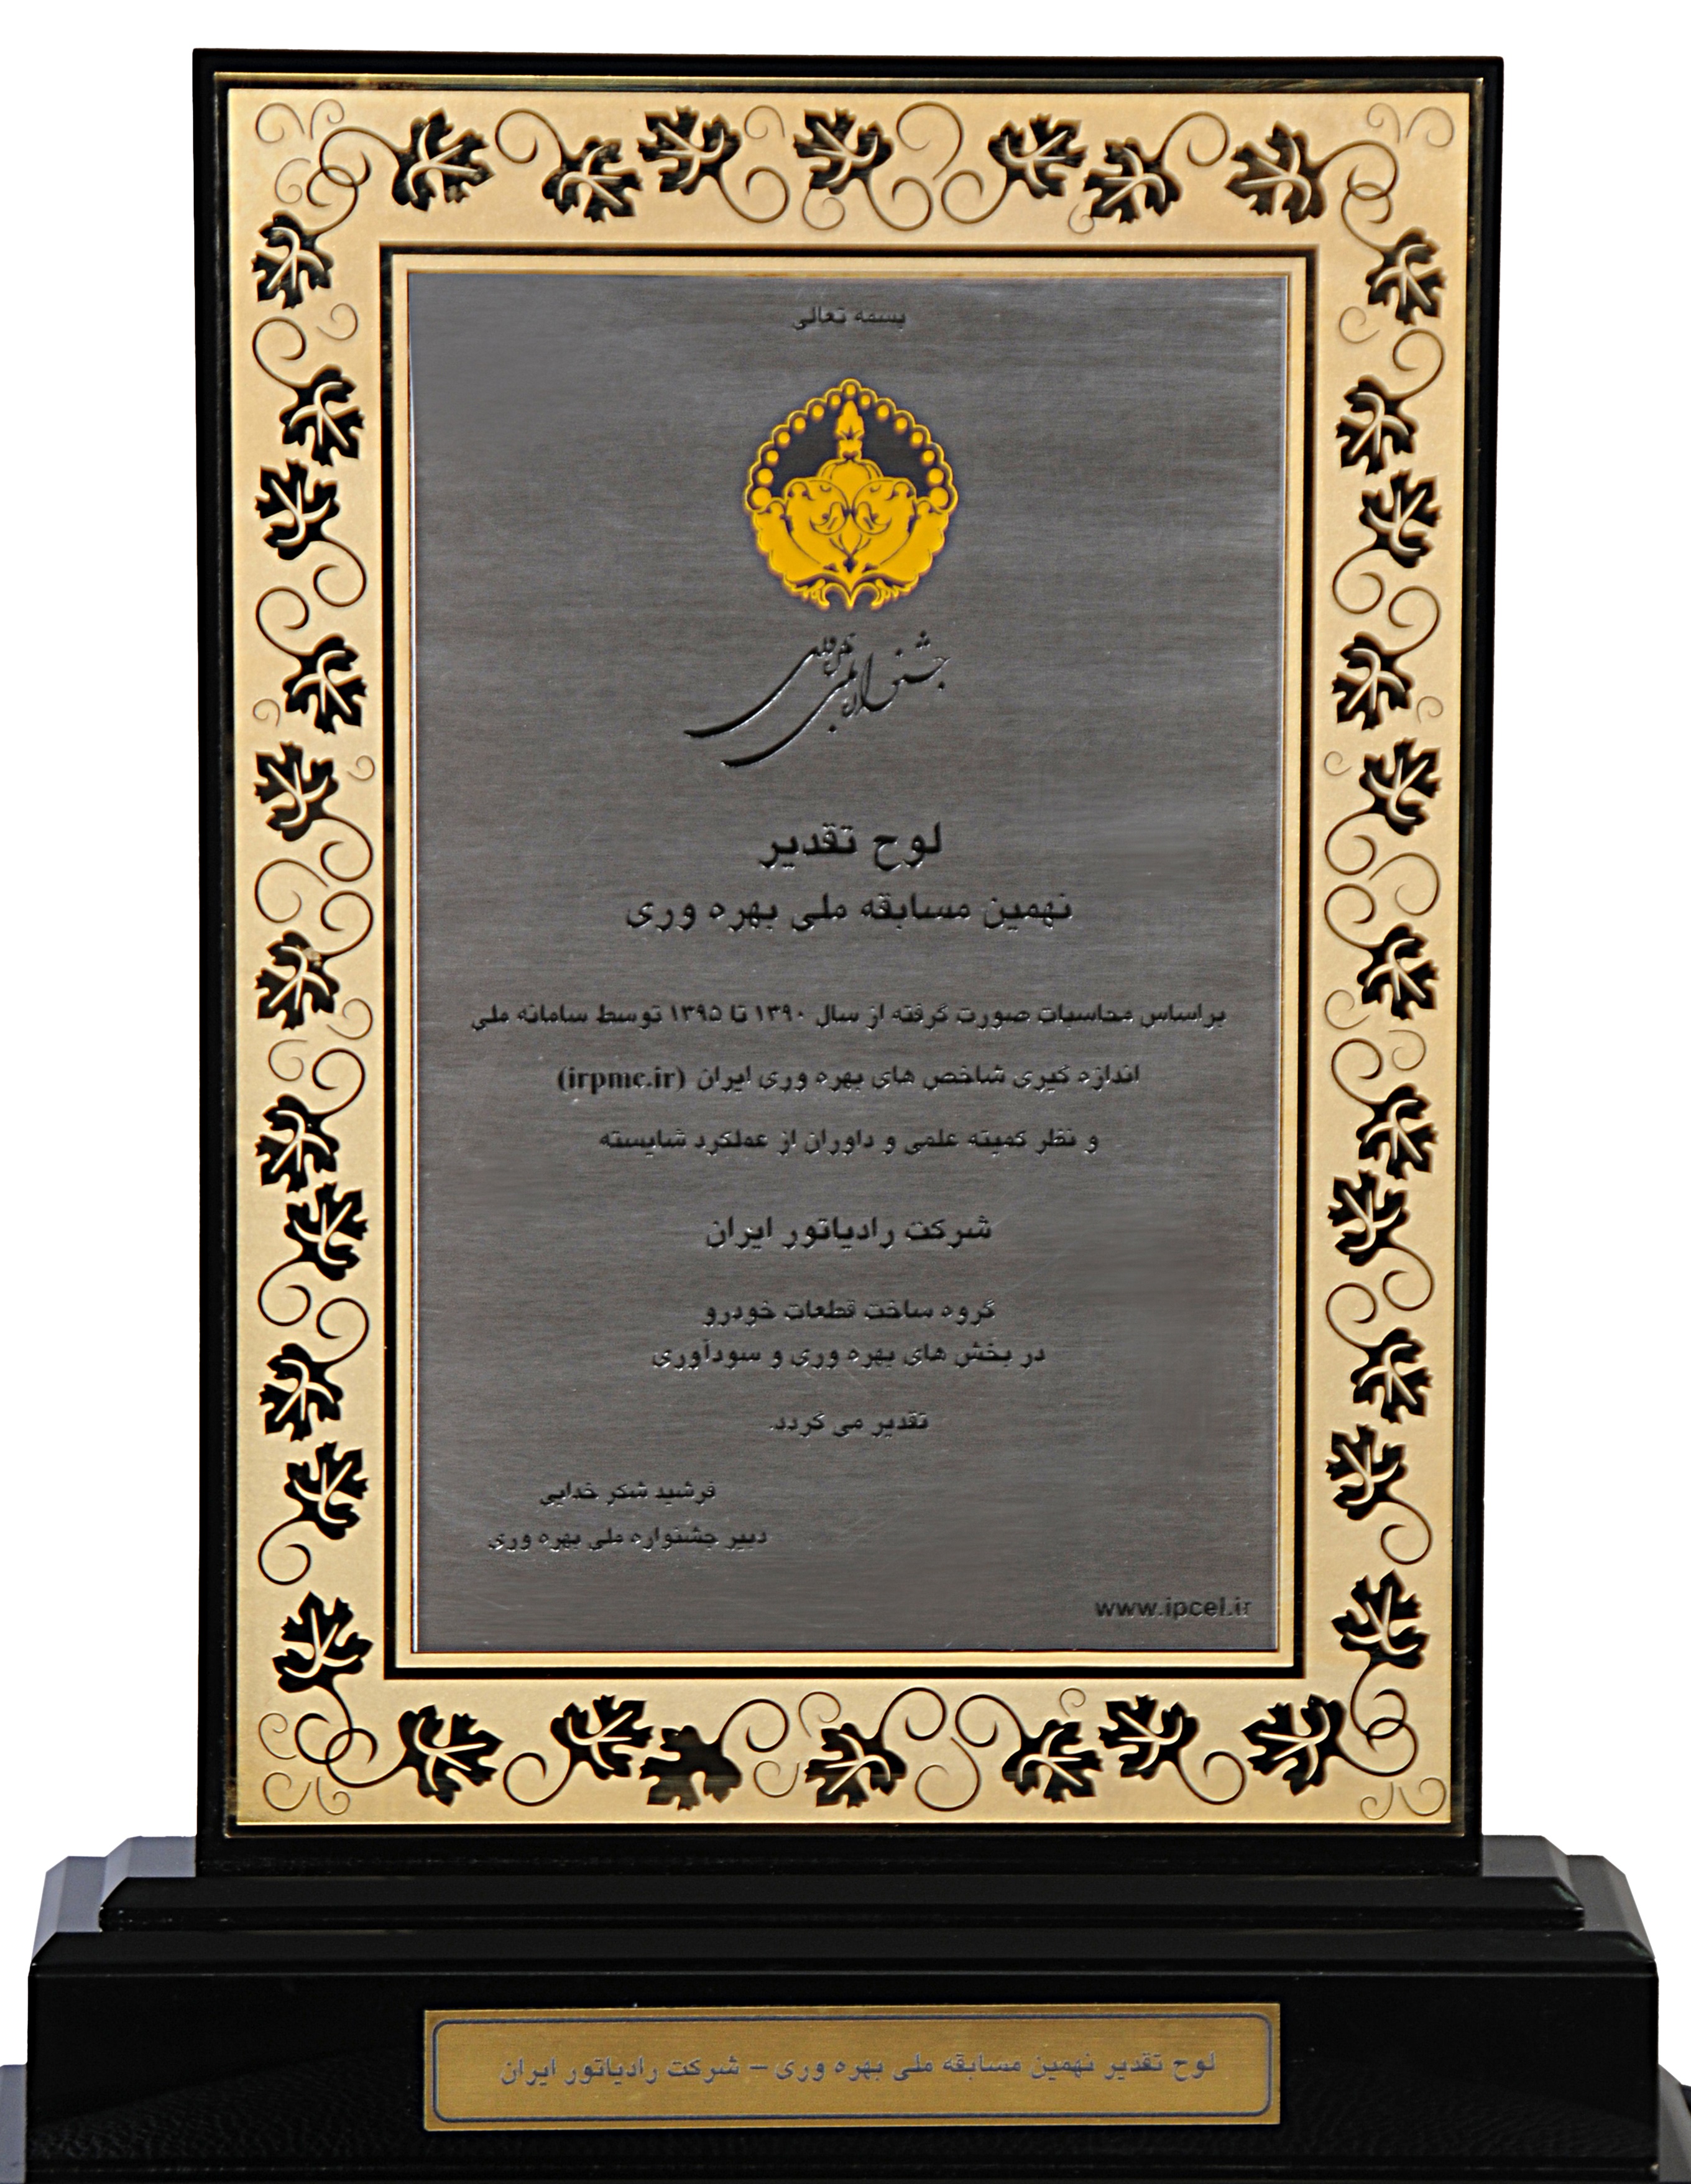 شرکت رادیاتور ایران در نهمین جشنواره ملی بهره وری موفق به دریافت لوح تقدیر گردید.